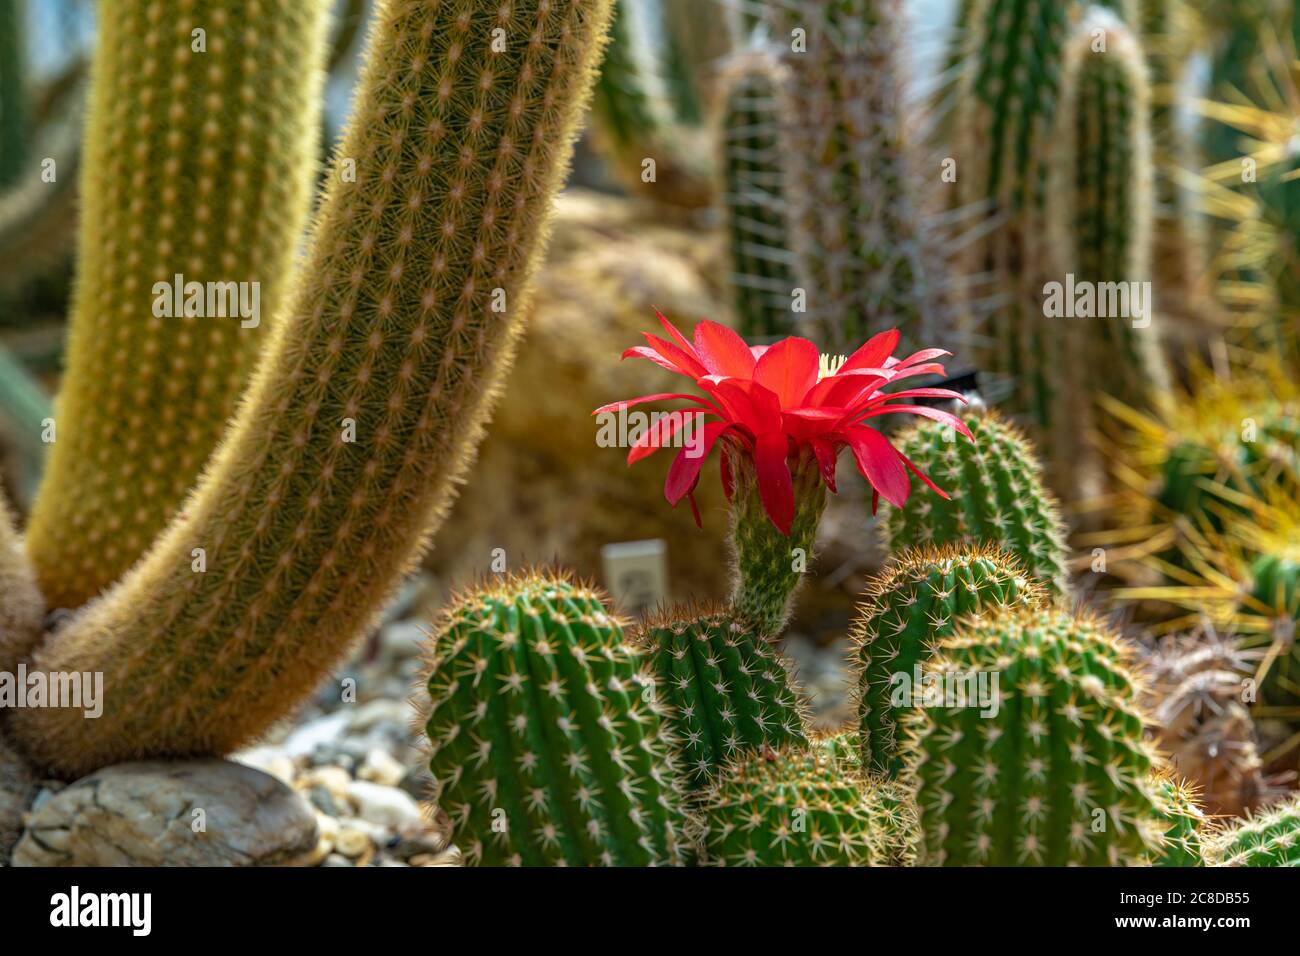 flowering cactus TRICHOCEREUS MACROGONUS in a botanical garden Stock Photo